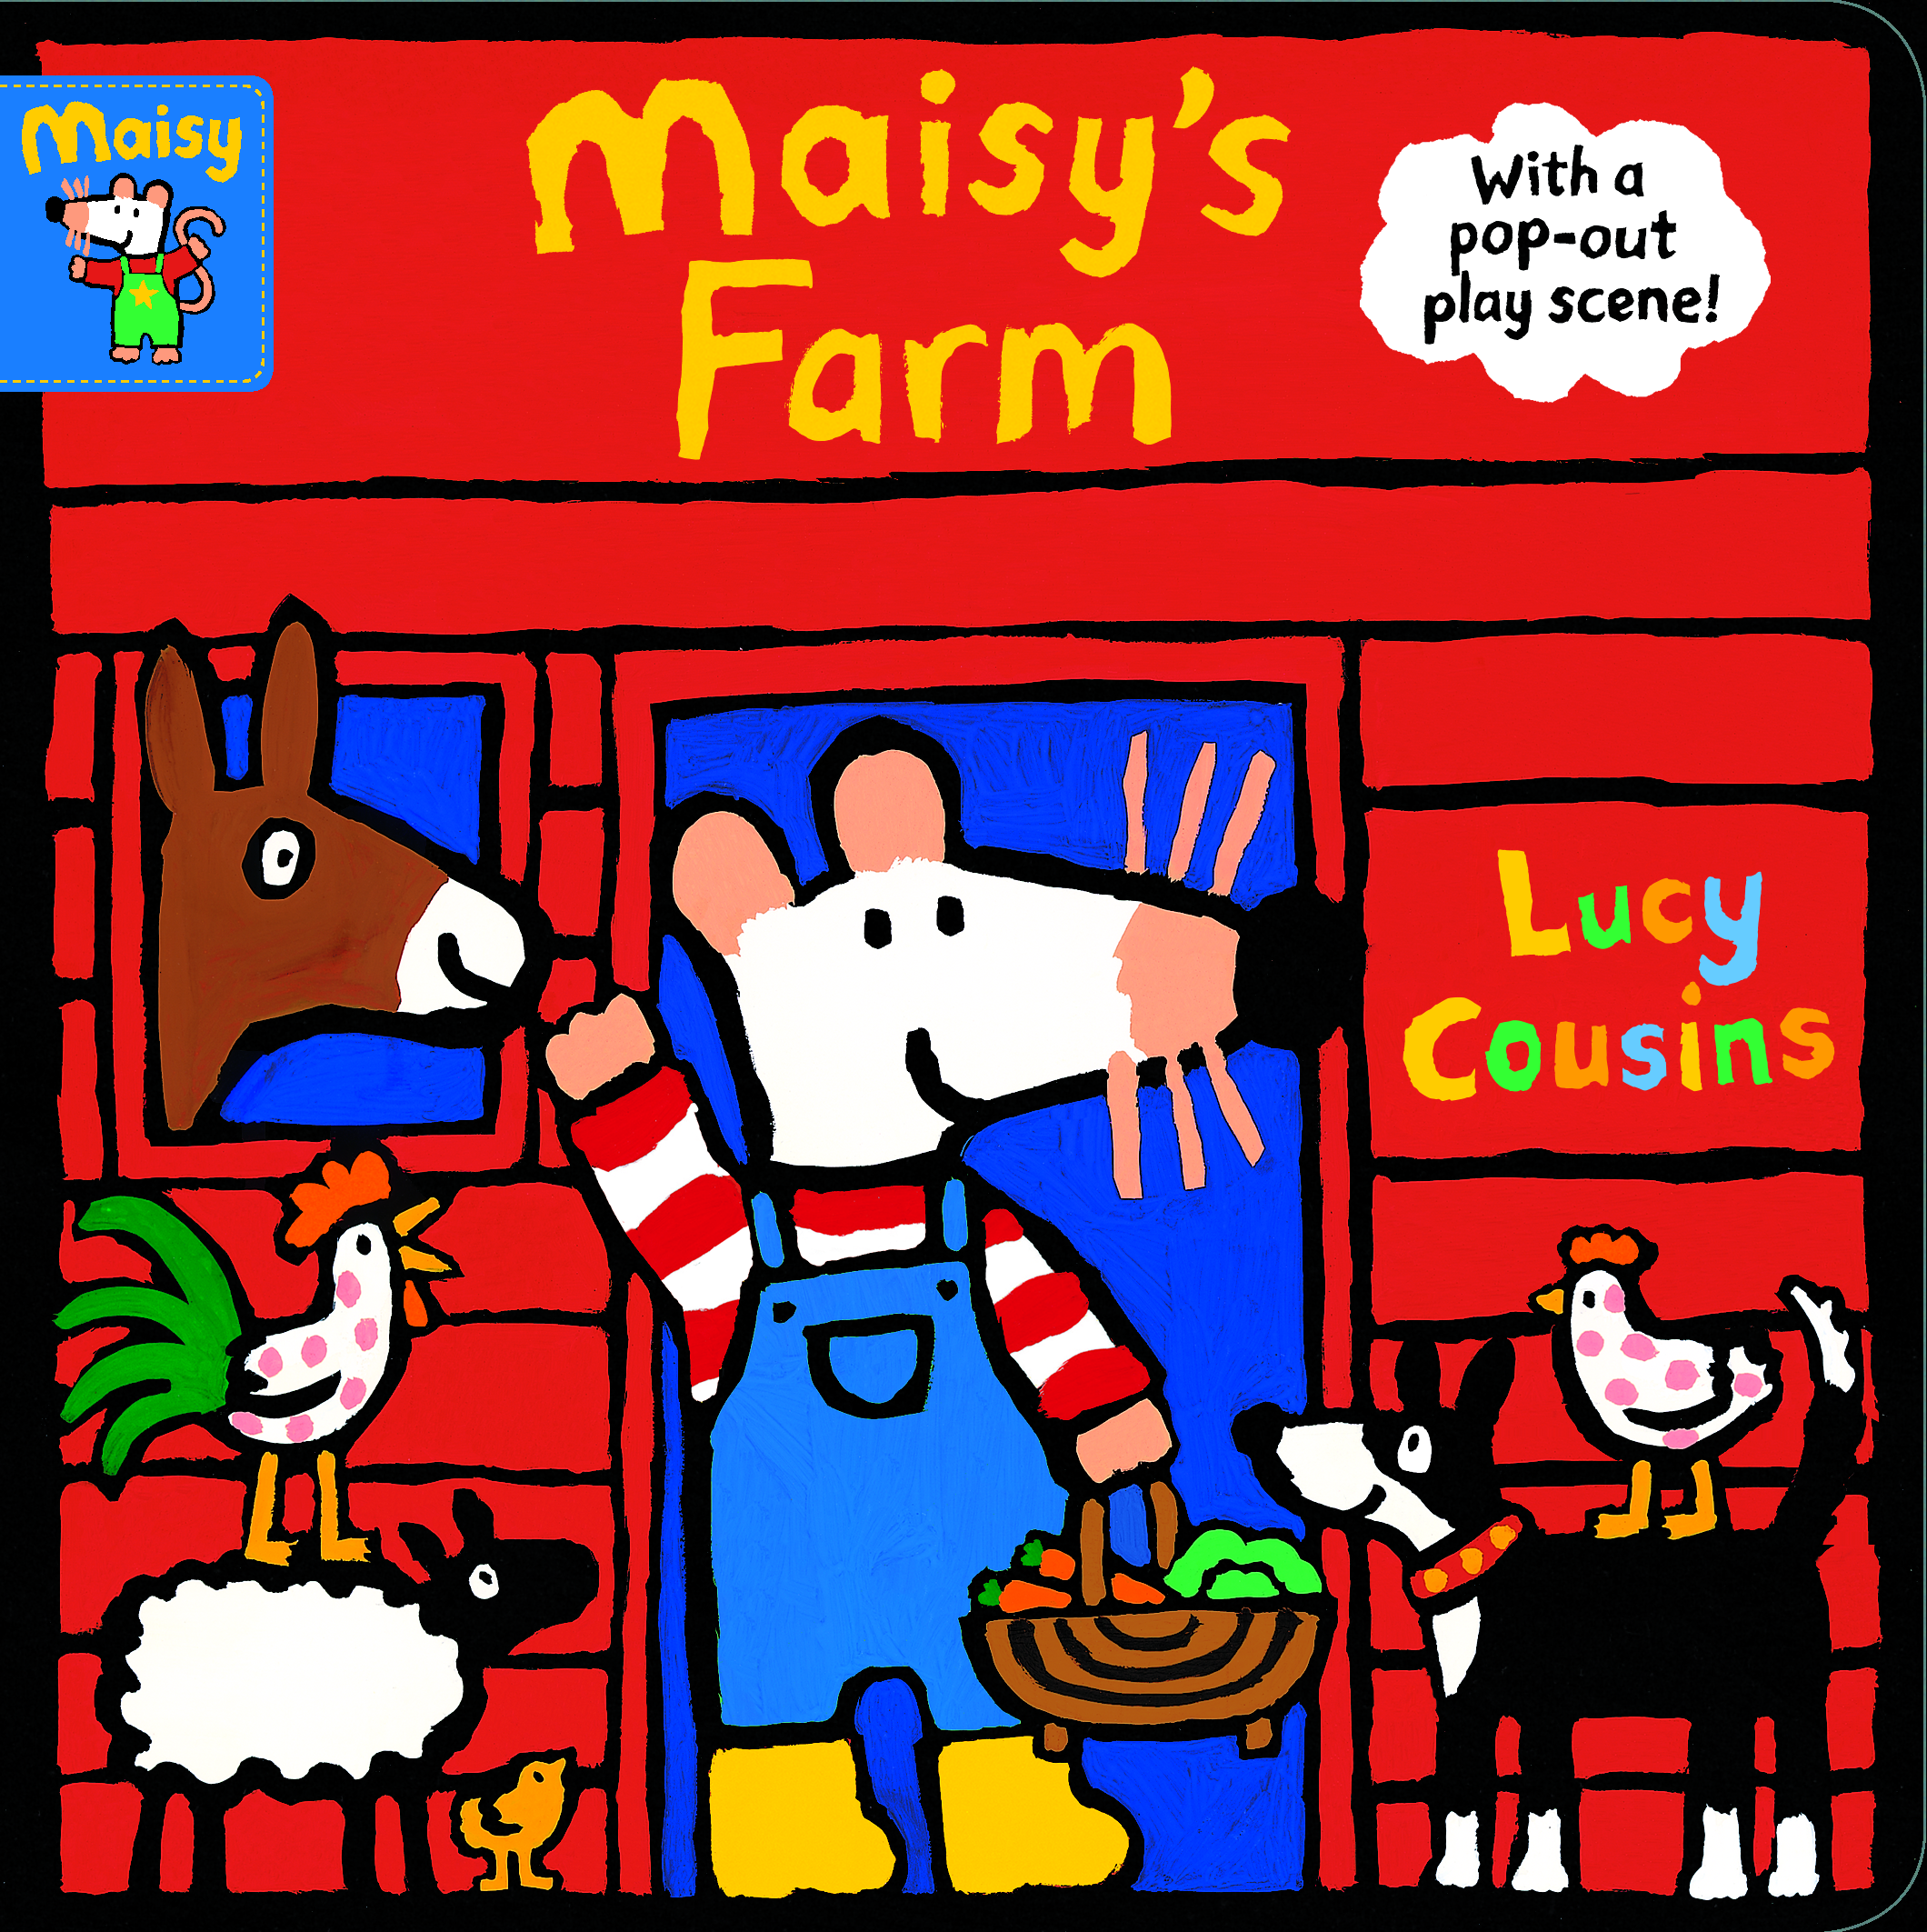 Maisy-s-Farm-With-a-pop-out-play-scene